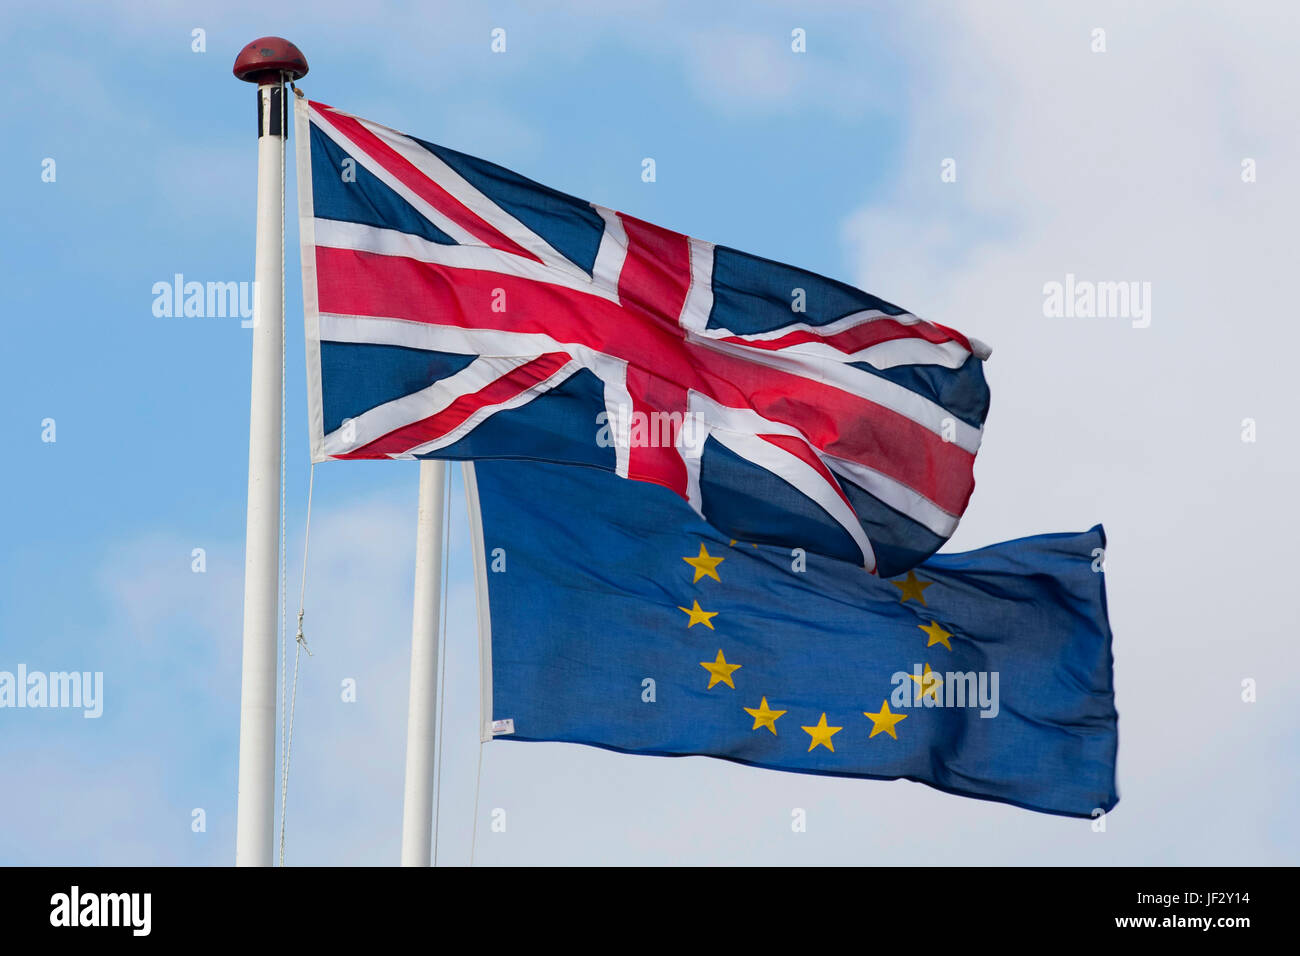 L'Union européenne et l'Union Jack britannique coup de drapeaux dans le vent. Le Royaume-Uni a voté pour quitter l'UE dans le cadre d'un référendum. Banque D'Images